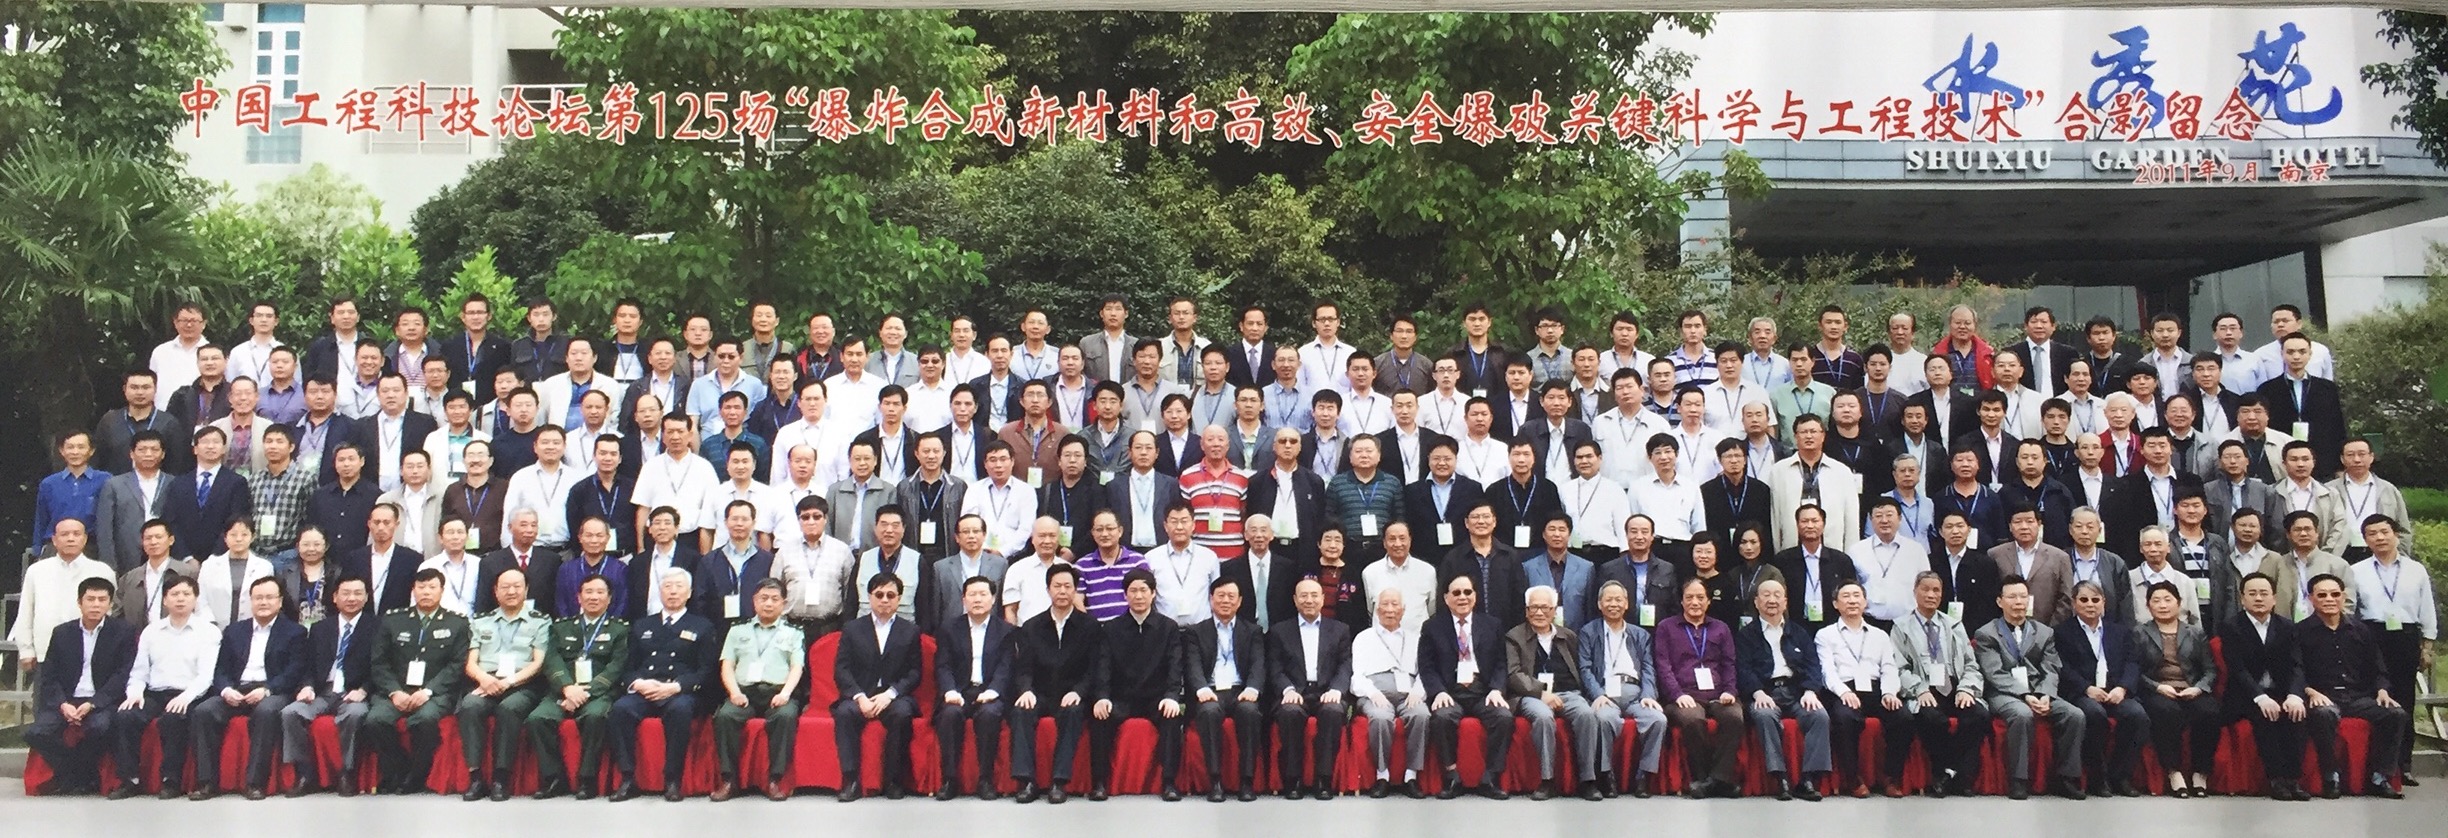 2011年9月中国工程科技论坛第125场“爆炸合成新材料和高效、安全爆破关键科学与工程技术”合影留念